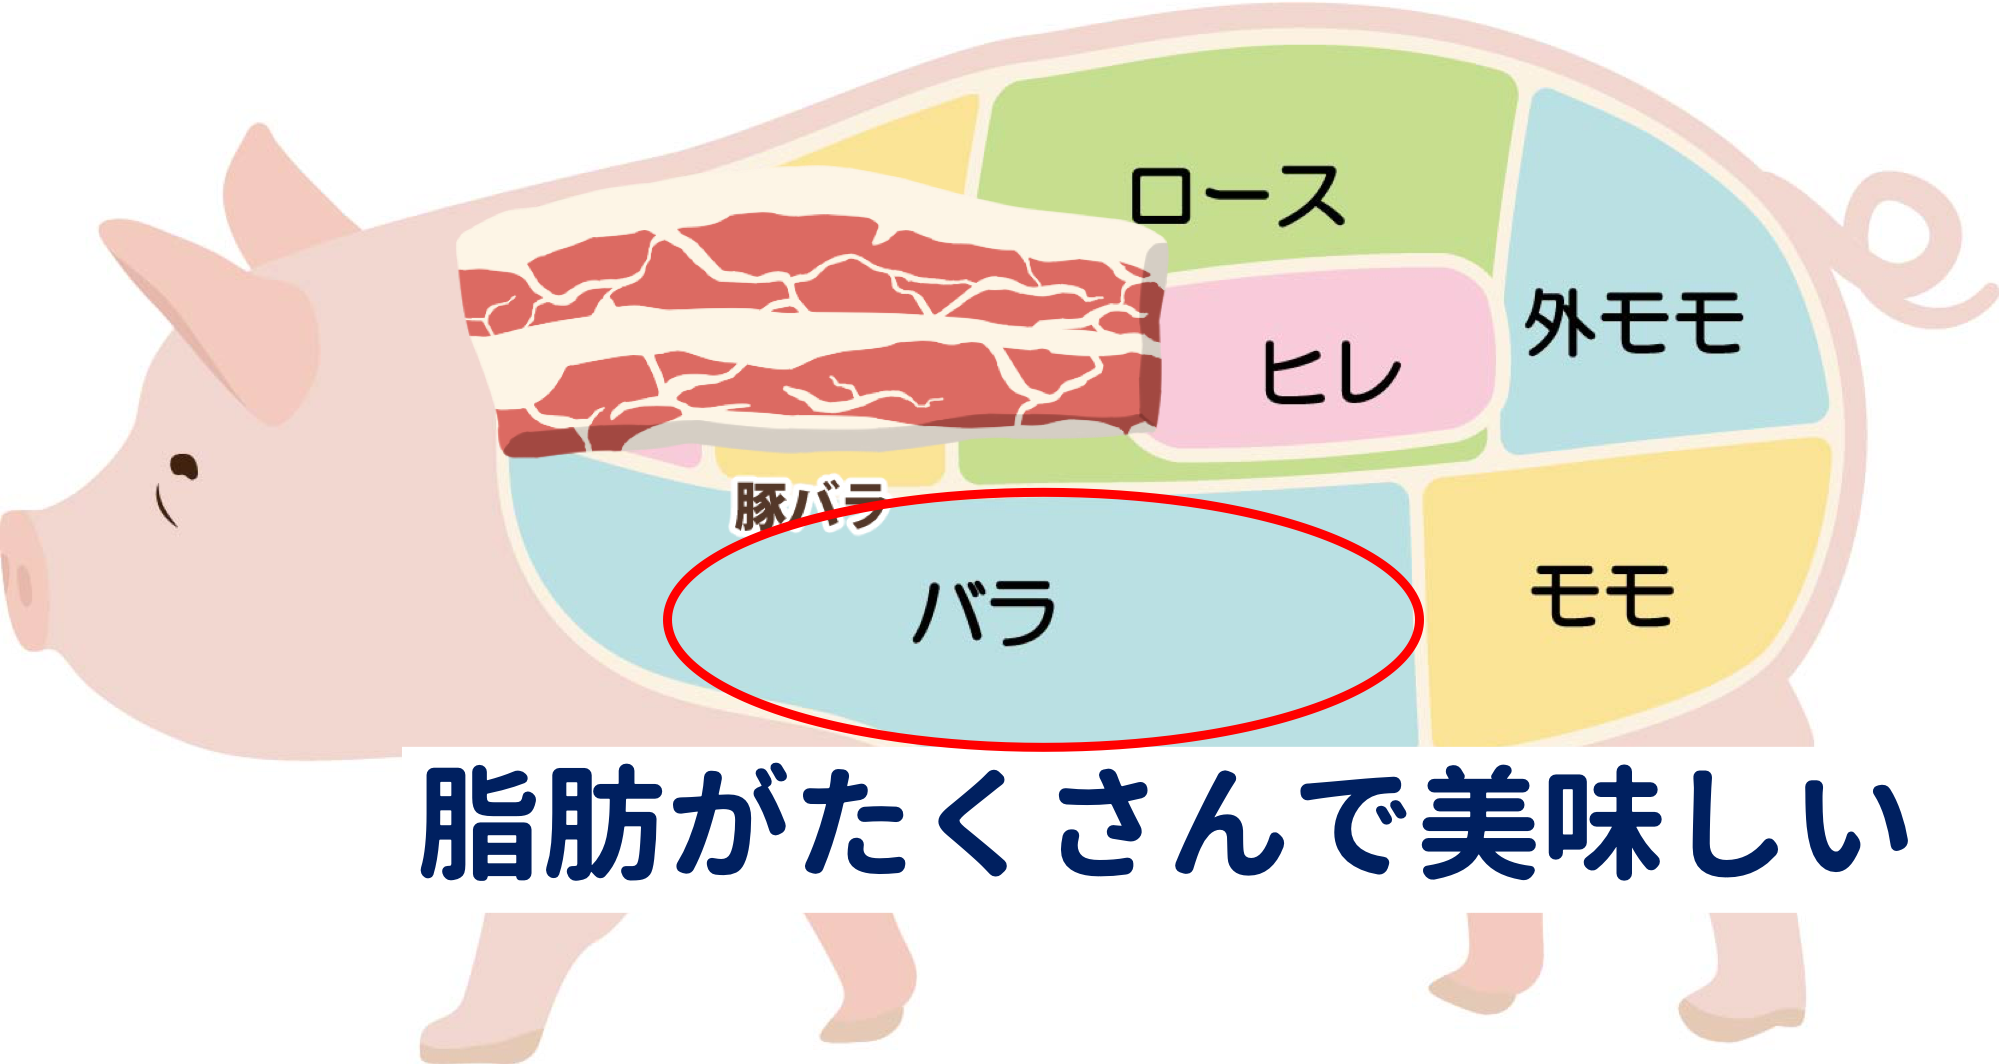 豚肉の部位と特徴をまとめてみました 値段や合う料理もご紹介 肉の通販ガイド 牛 豚 鳥のおすすめ通販